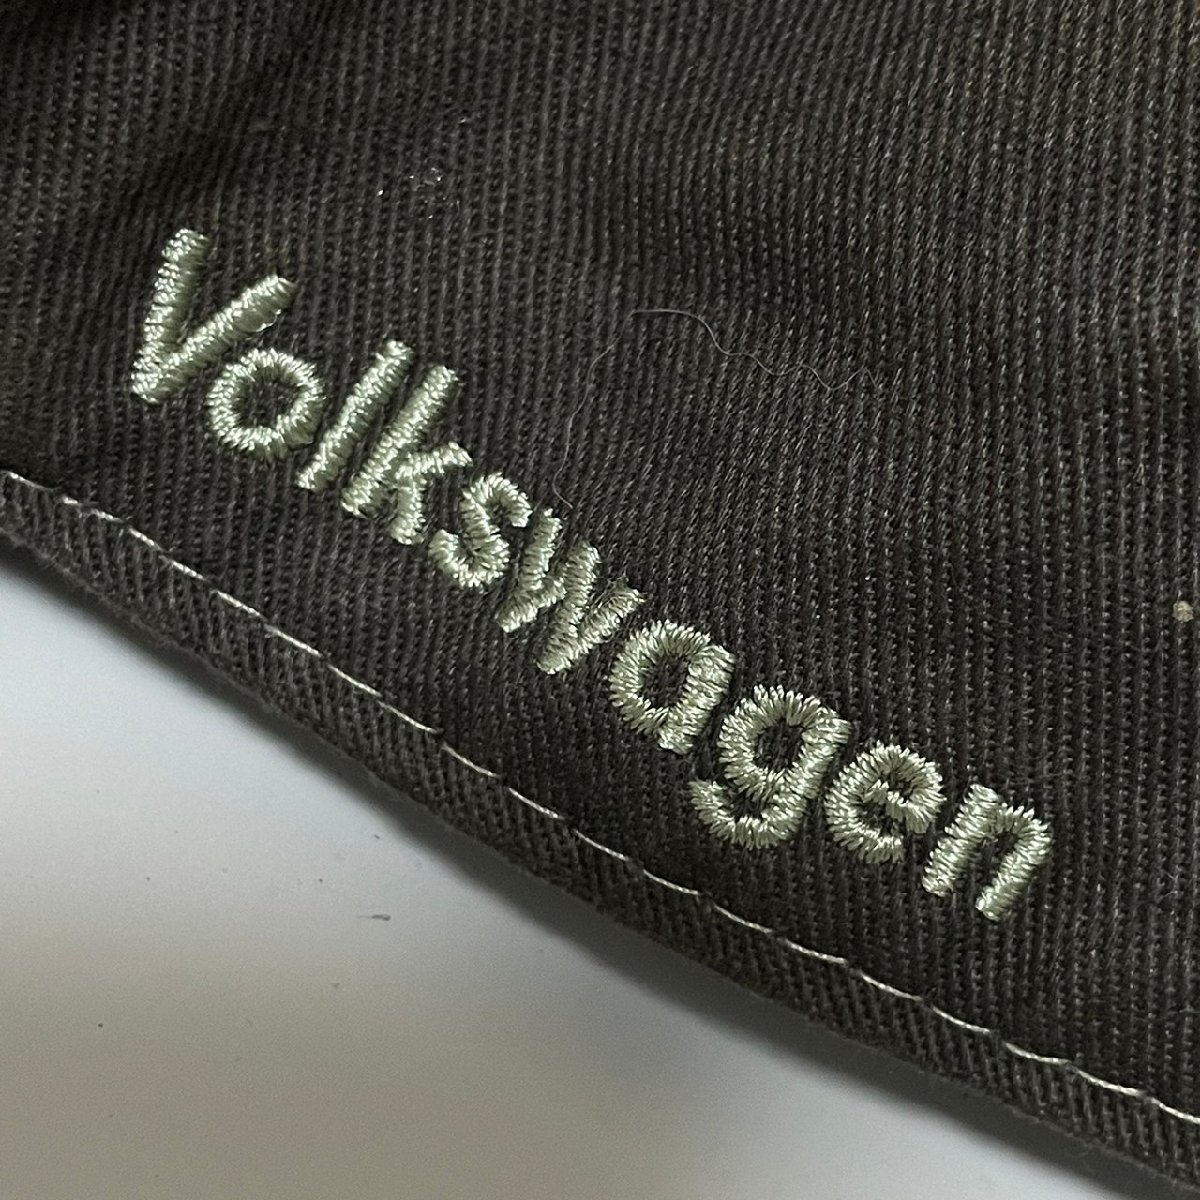 (^w^)b Volkswagen cap hat Brown Volkswagen emblem Logo embroidery casual simple velcro belt C0319EE